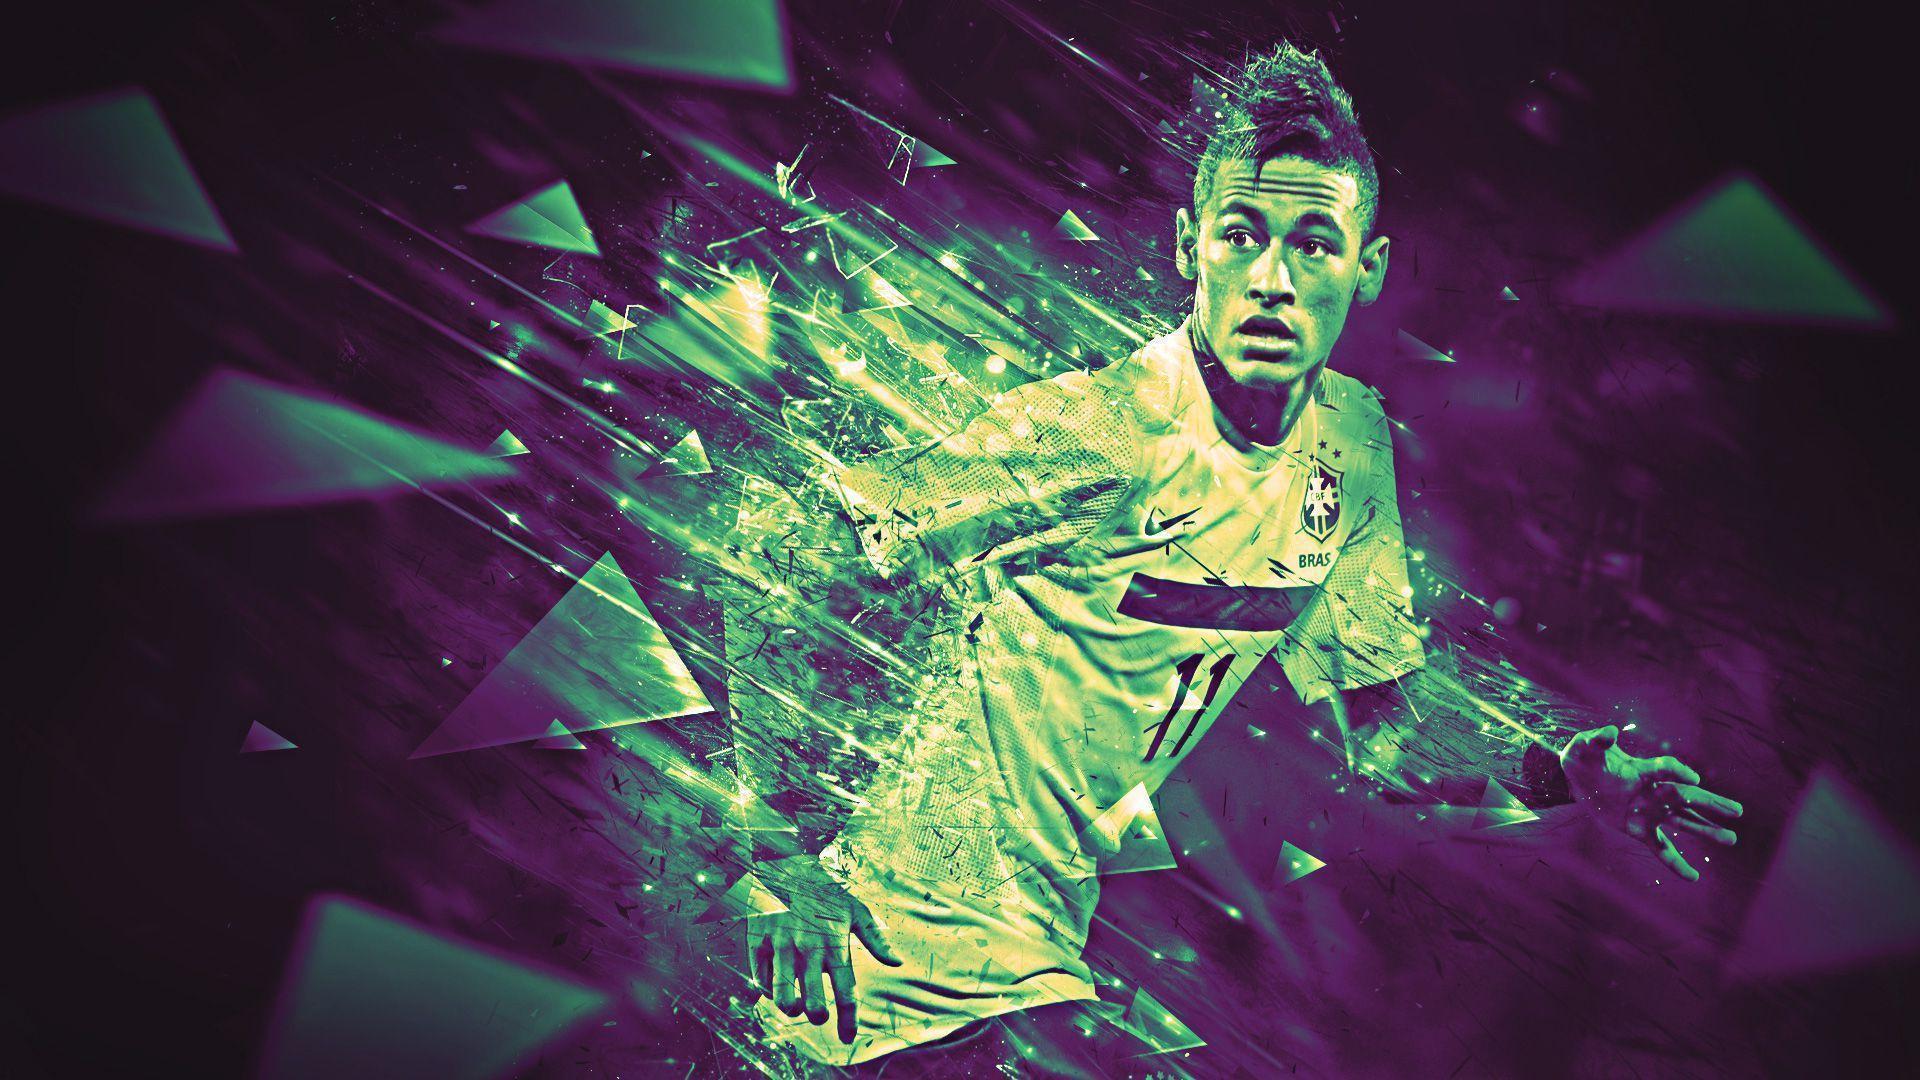 Best HD Neymar Wallpapers 2014